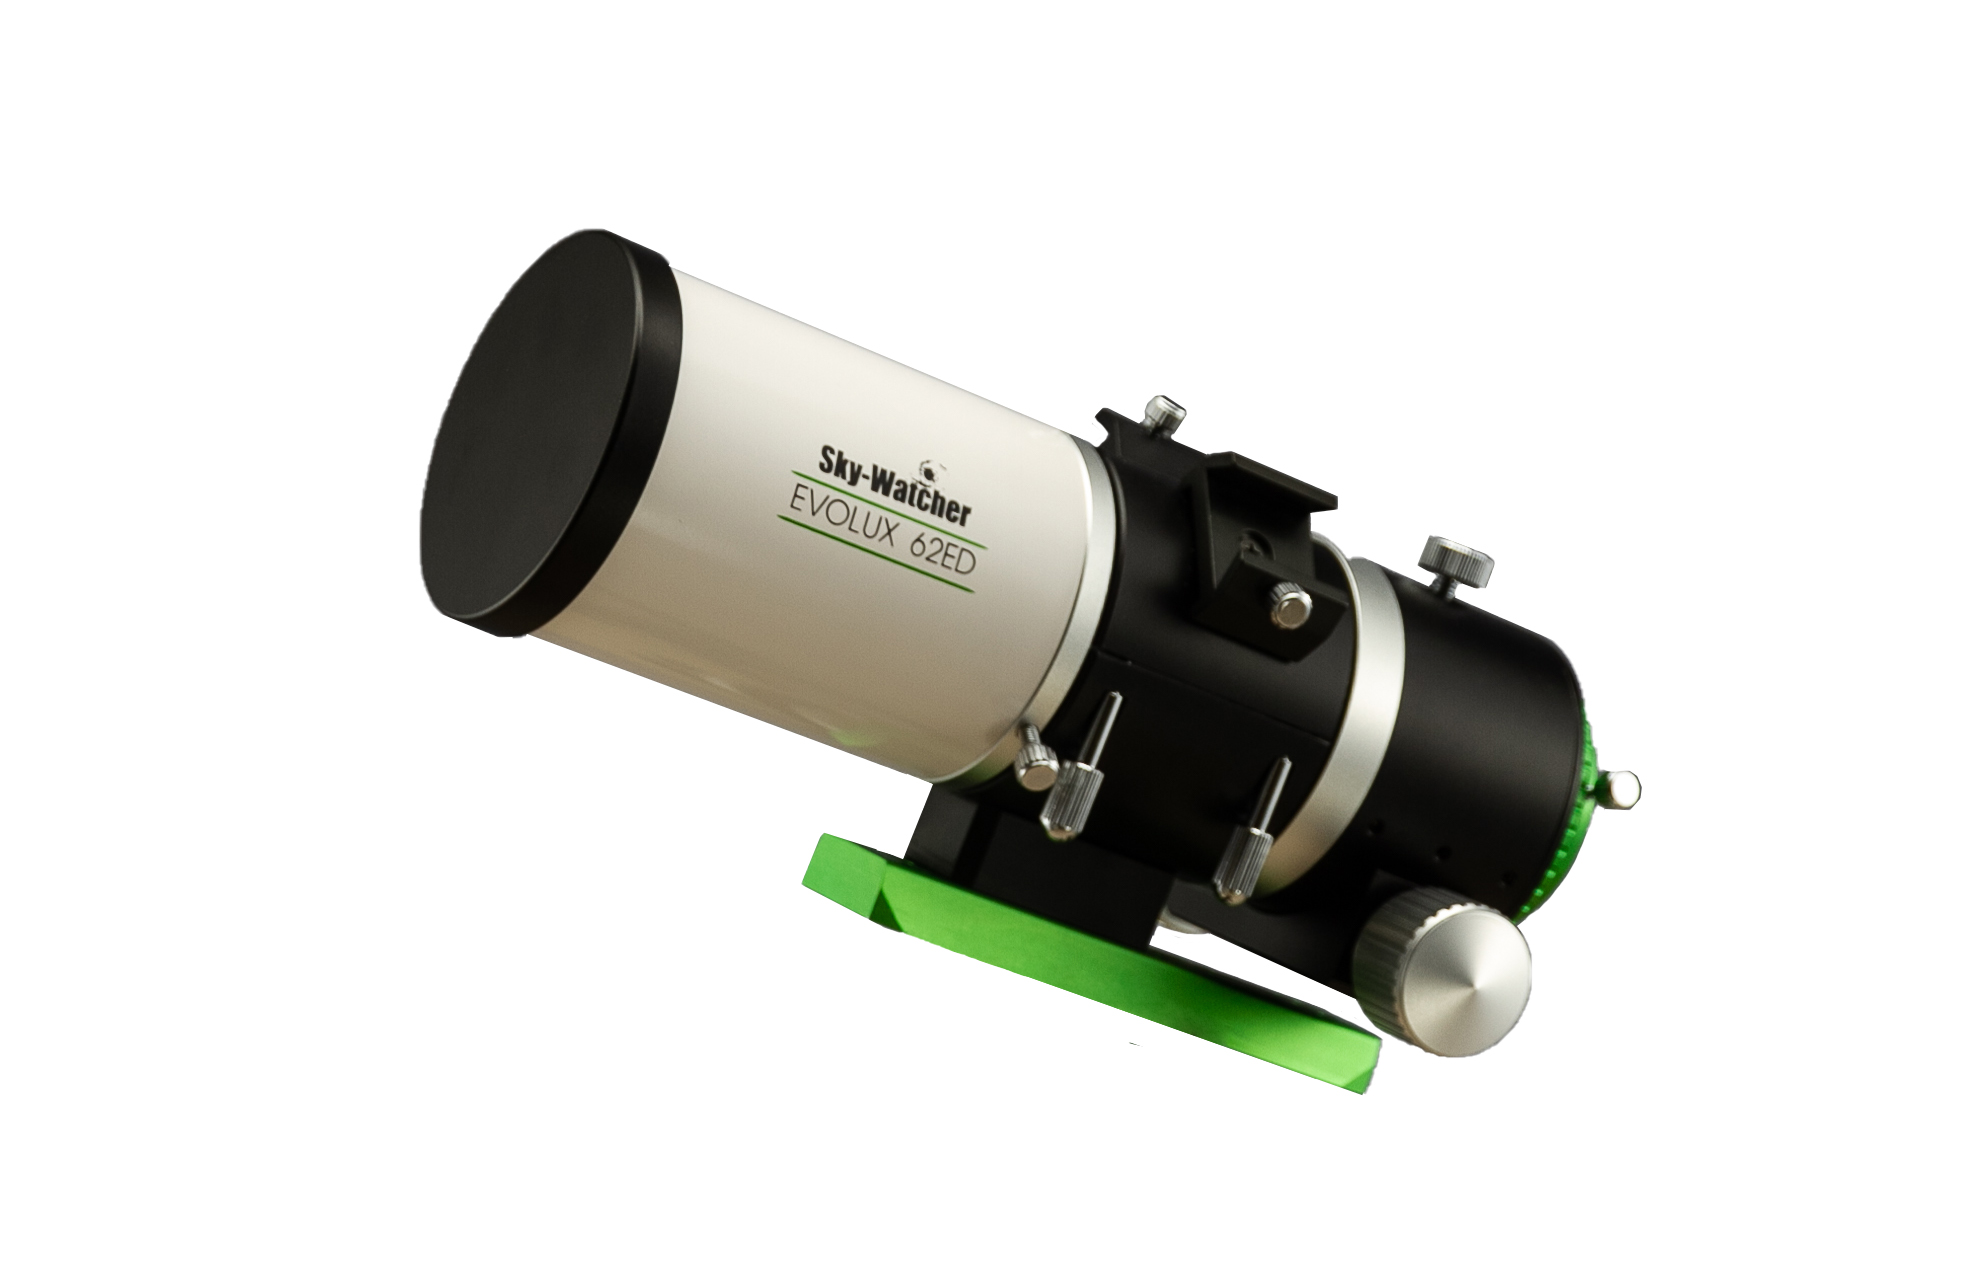   IN ARRIVO GIUGNO 2022
Tubo ottico Sky-Watcher Evolux 62 ED completo di riduttore di focale 